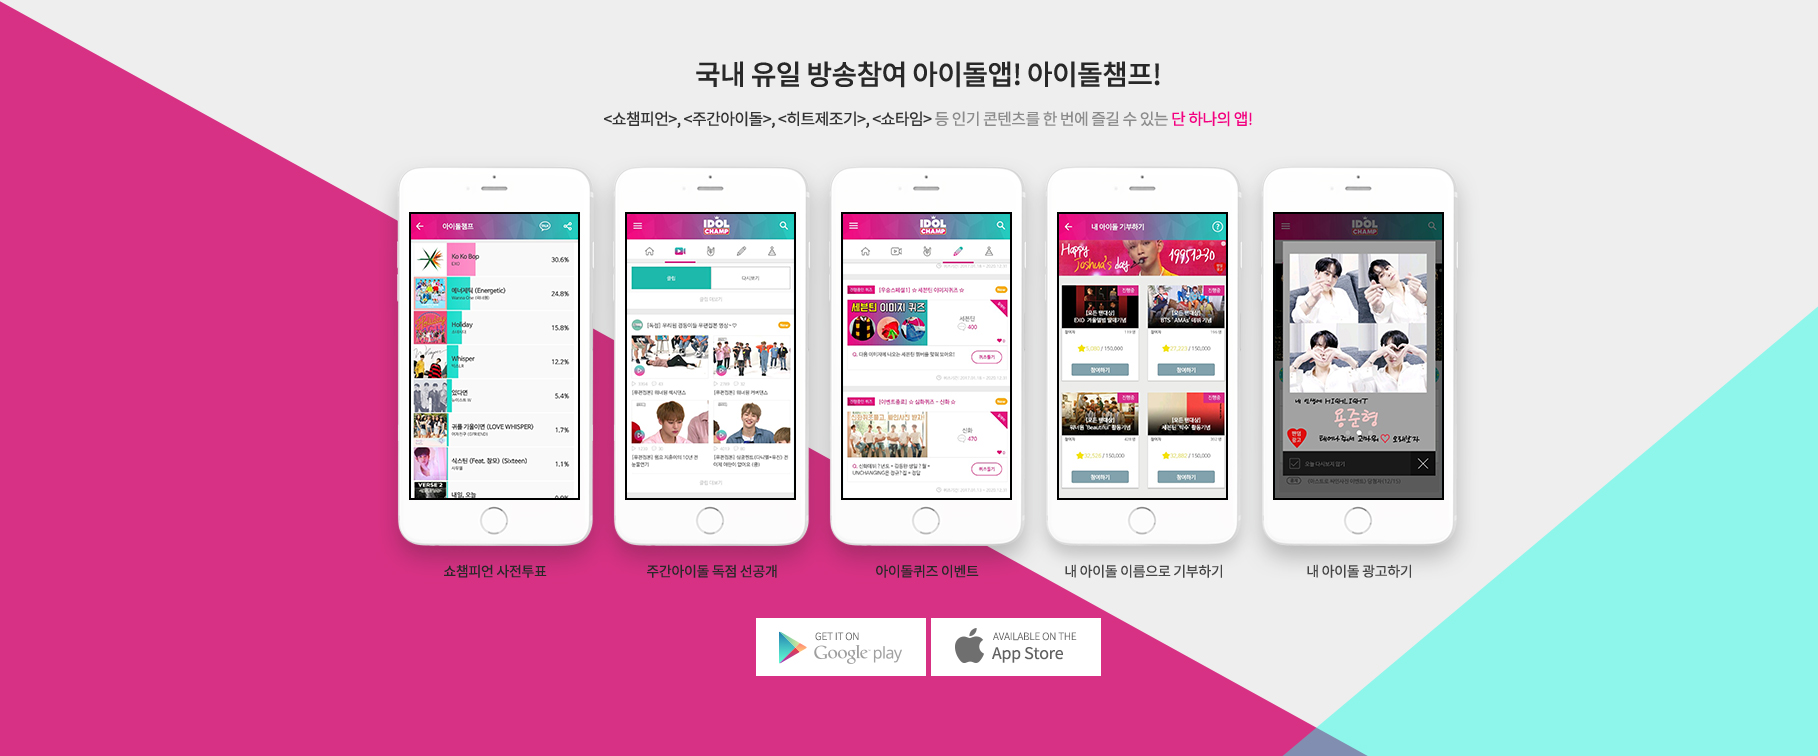 <쇼챔피언>, <주간아이돌>, <히트제조기>, <쇼타임> 등 인기 콘텐츠를 한 번에 즐길 수 있는 단 하나의 앱!